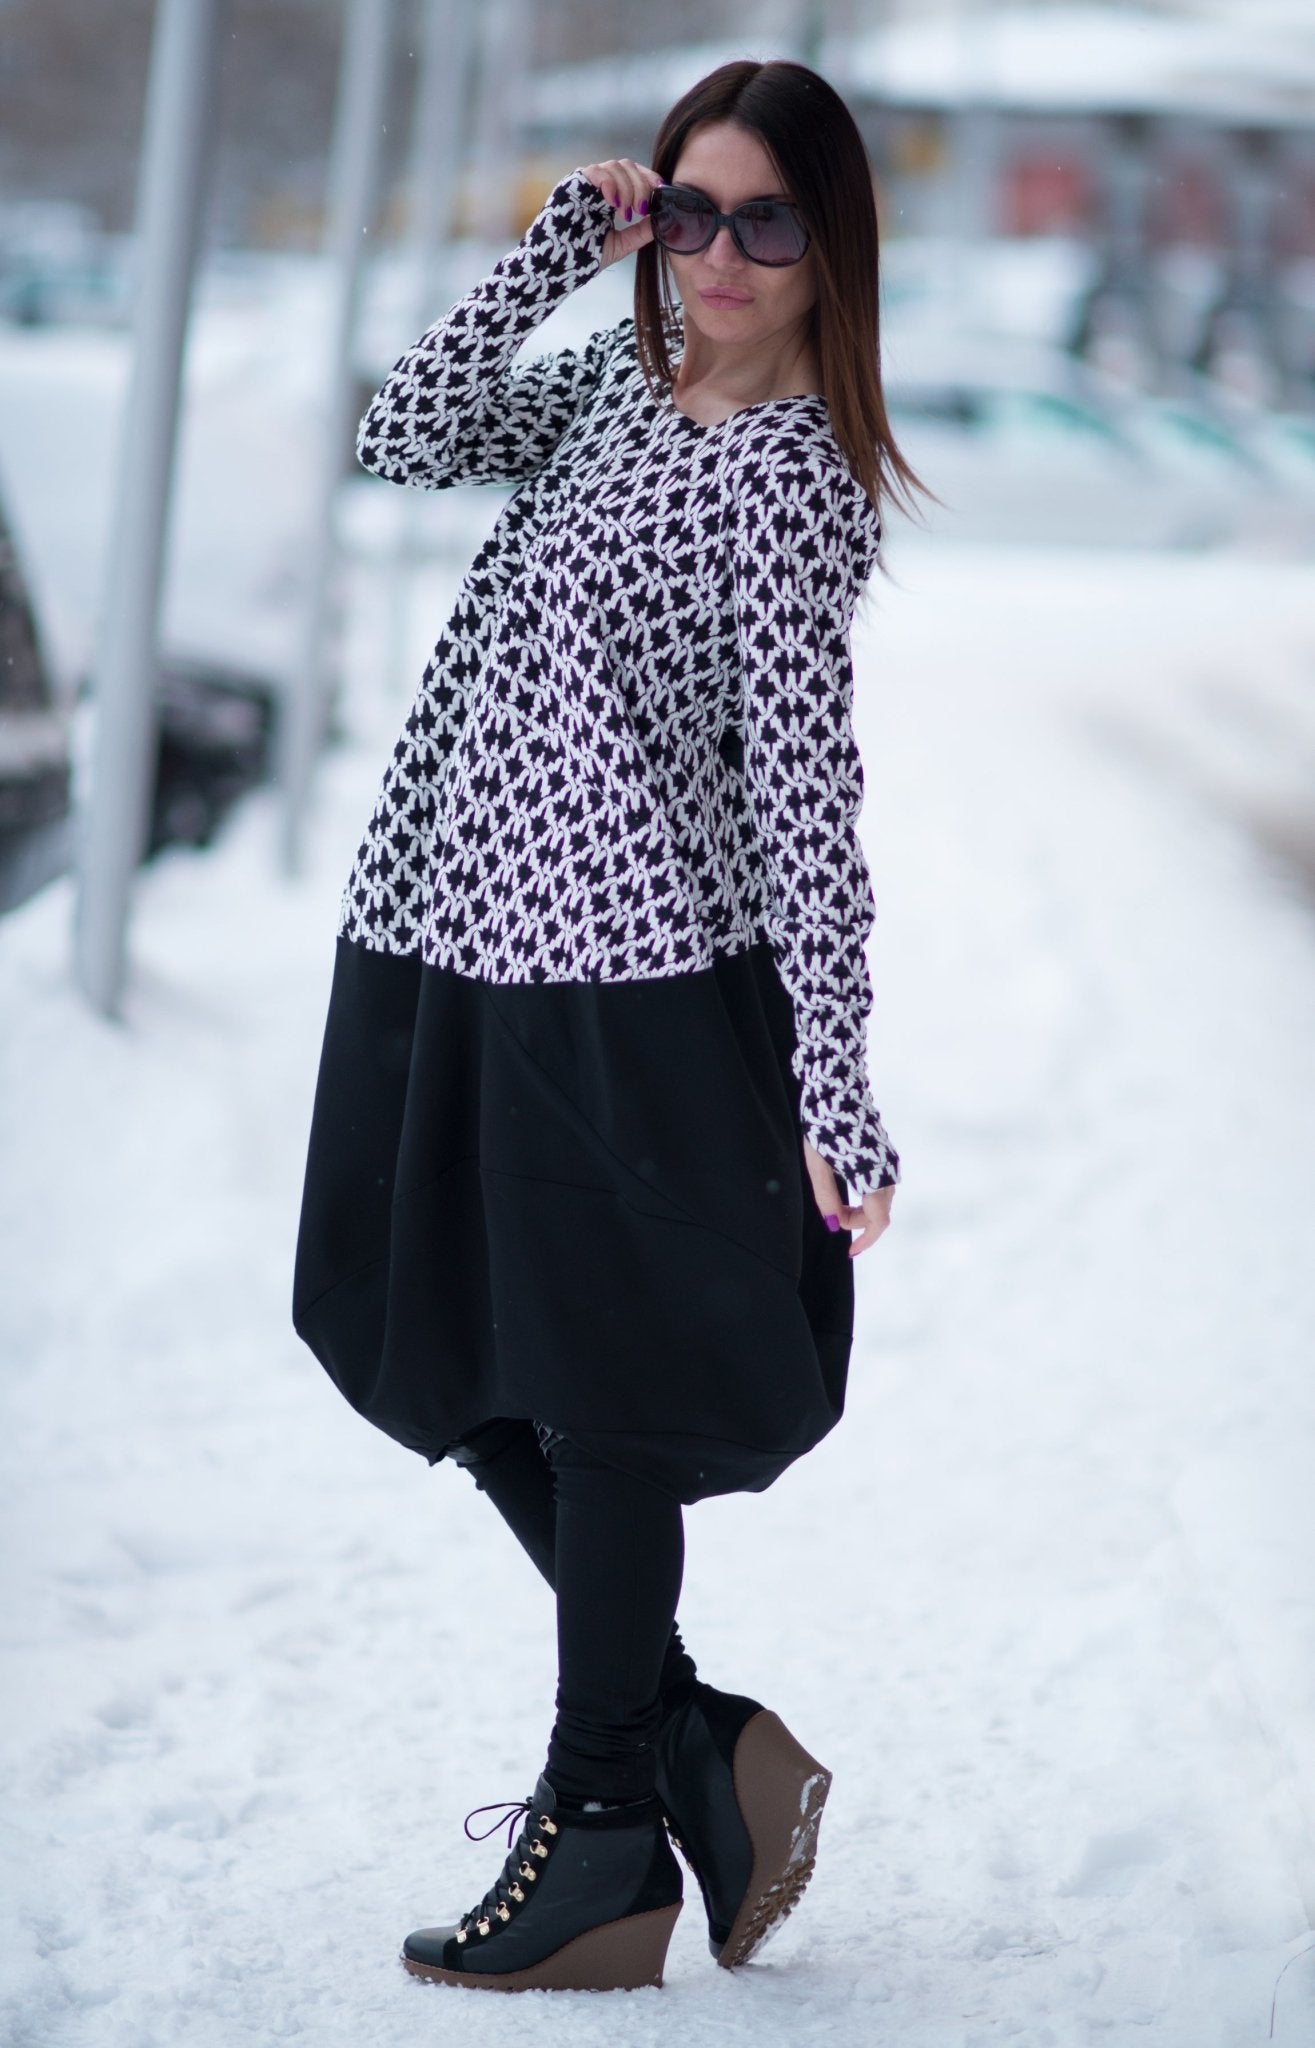 Winter Dress BARI SALE - EUG FASHION EugFashion 